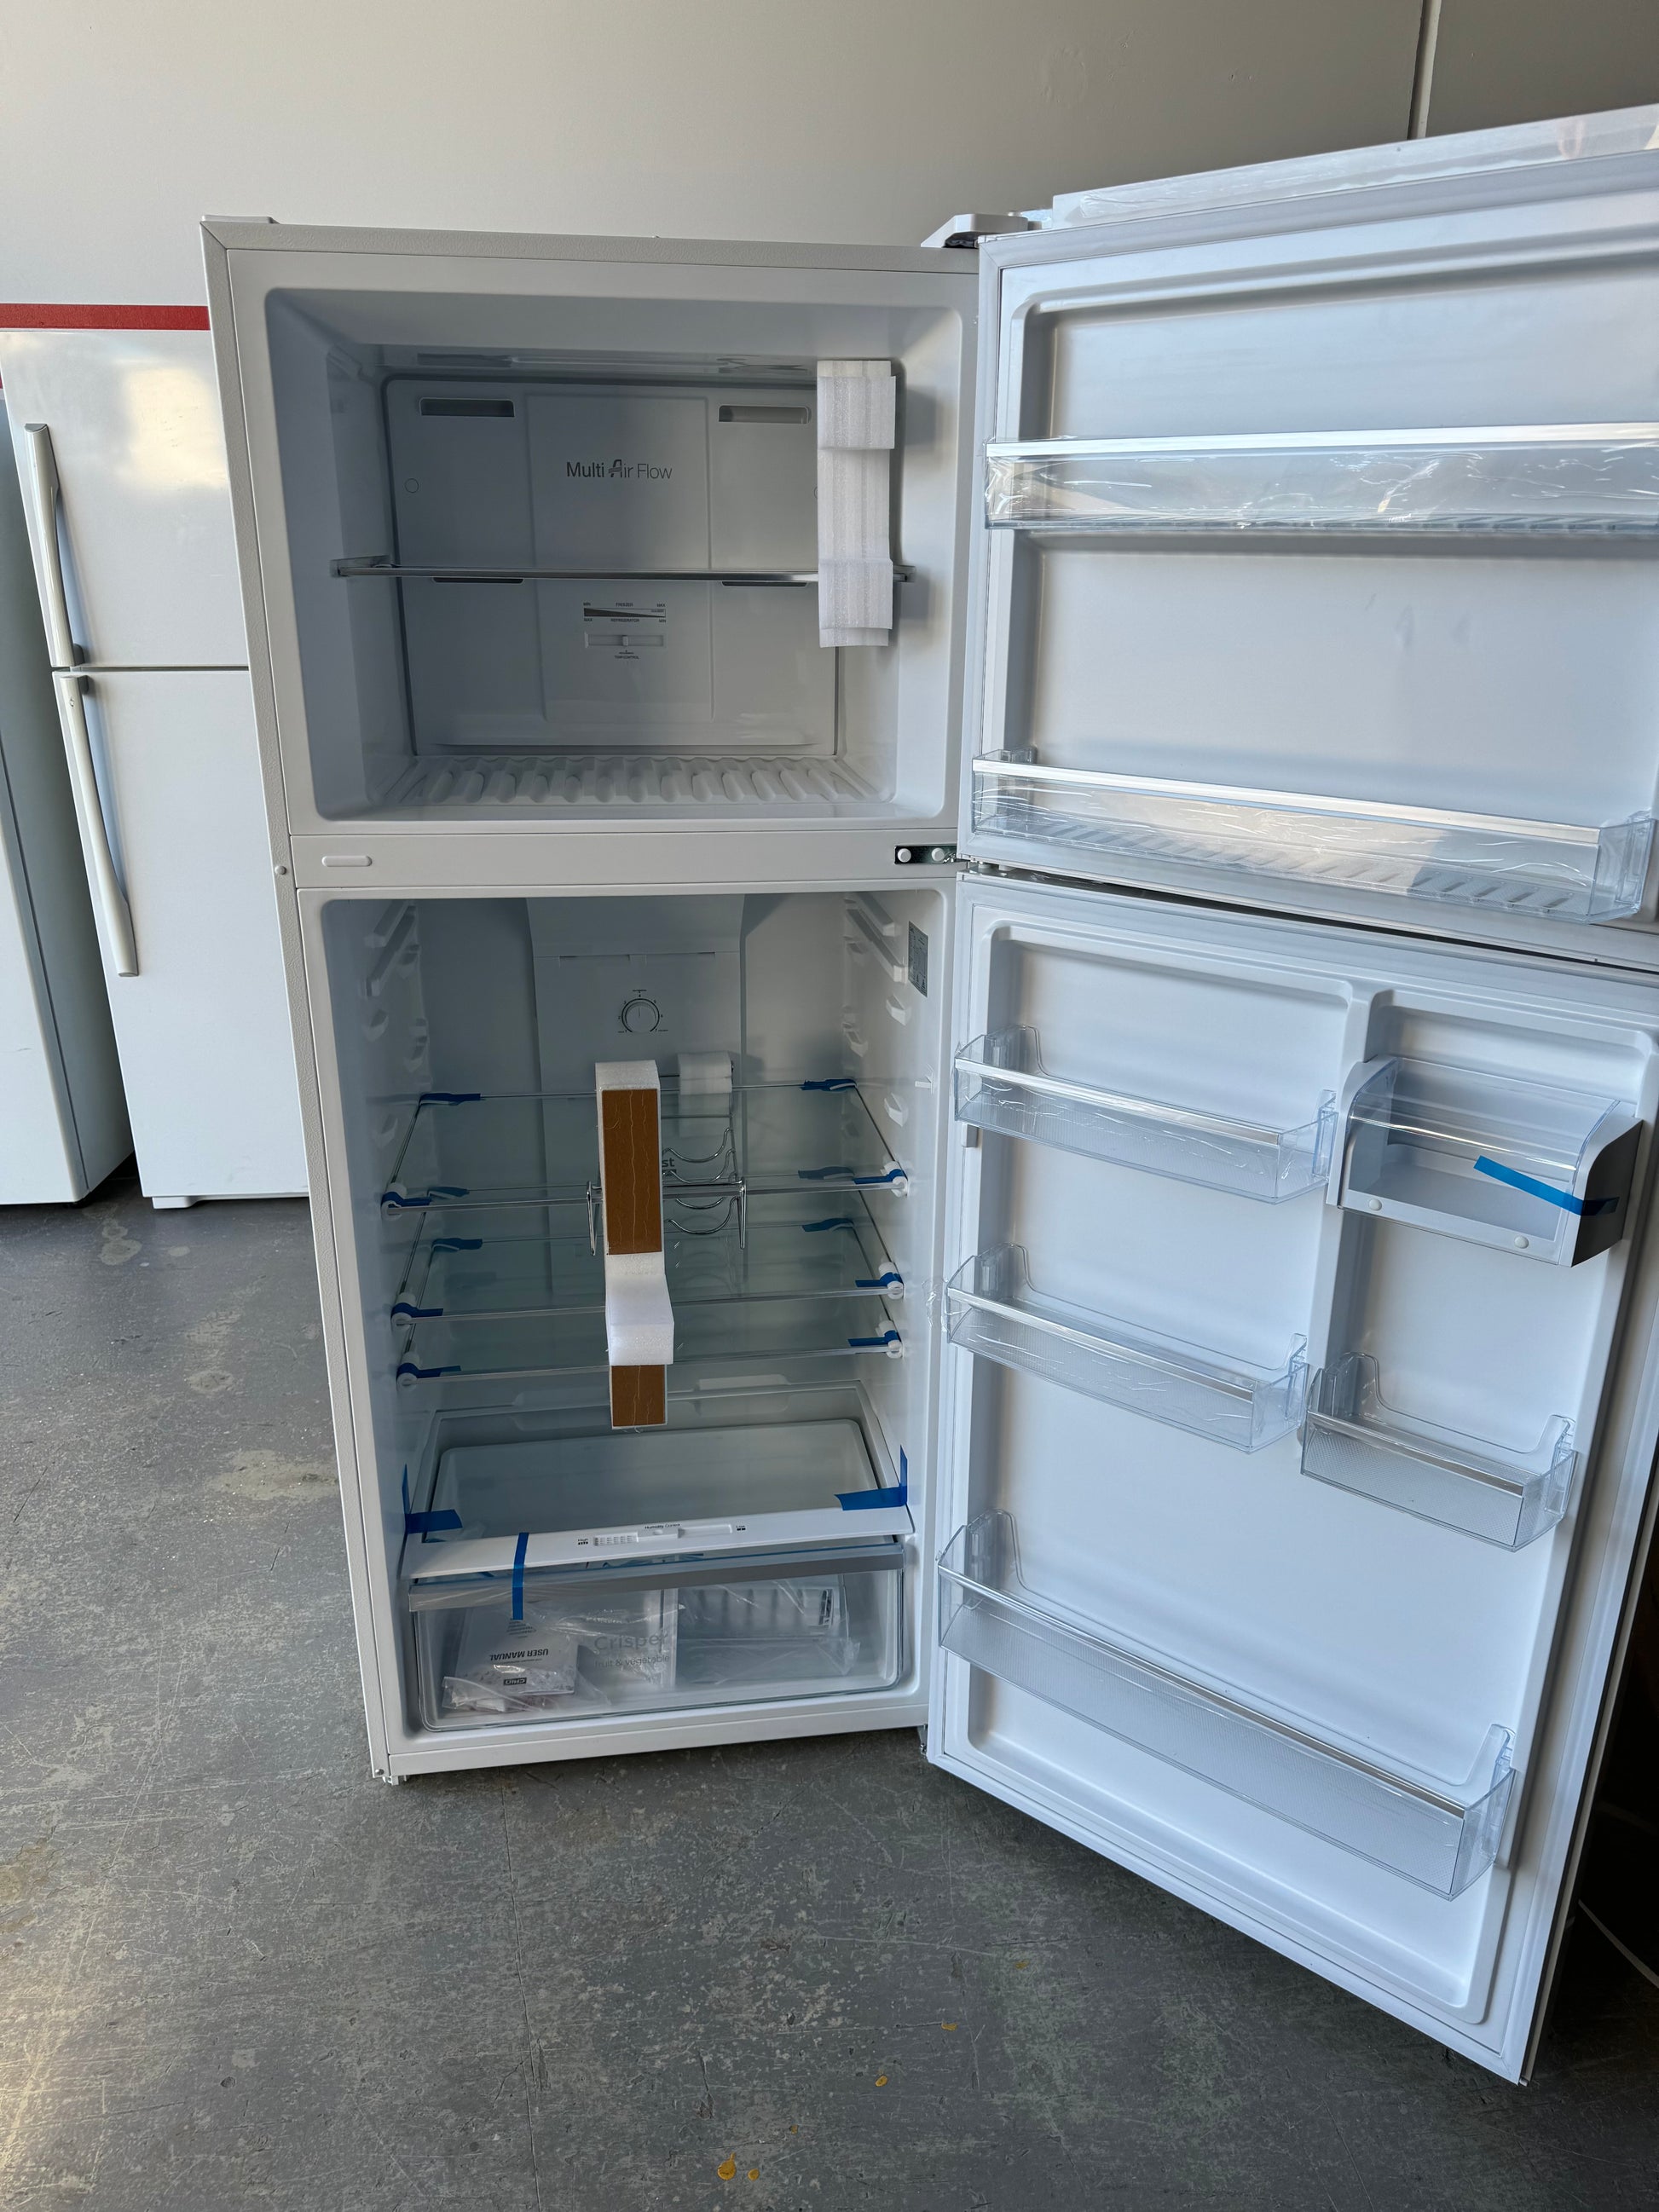 Chiq 410 Litres Fridge Freezer | PERTH